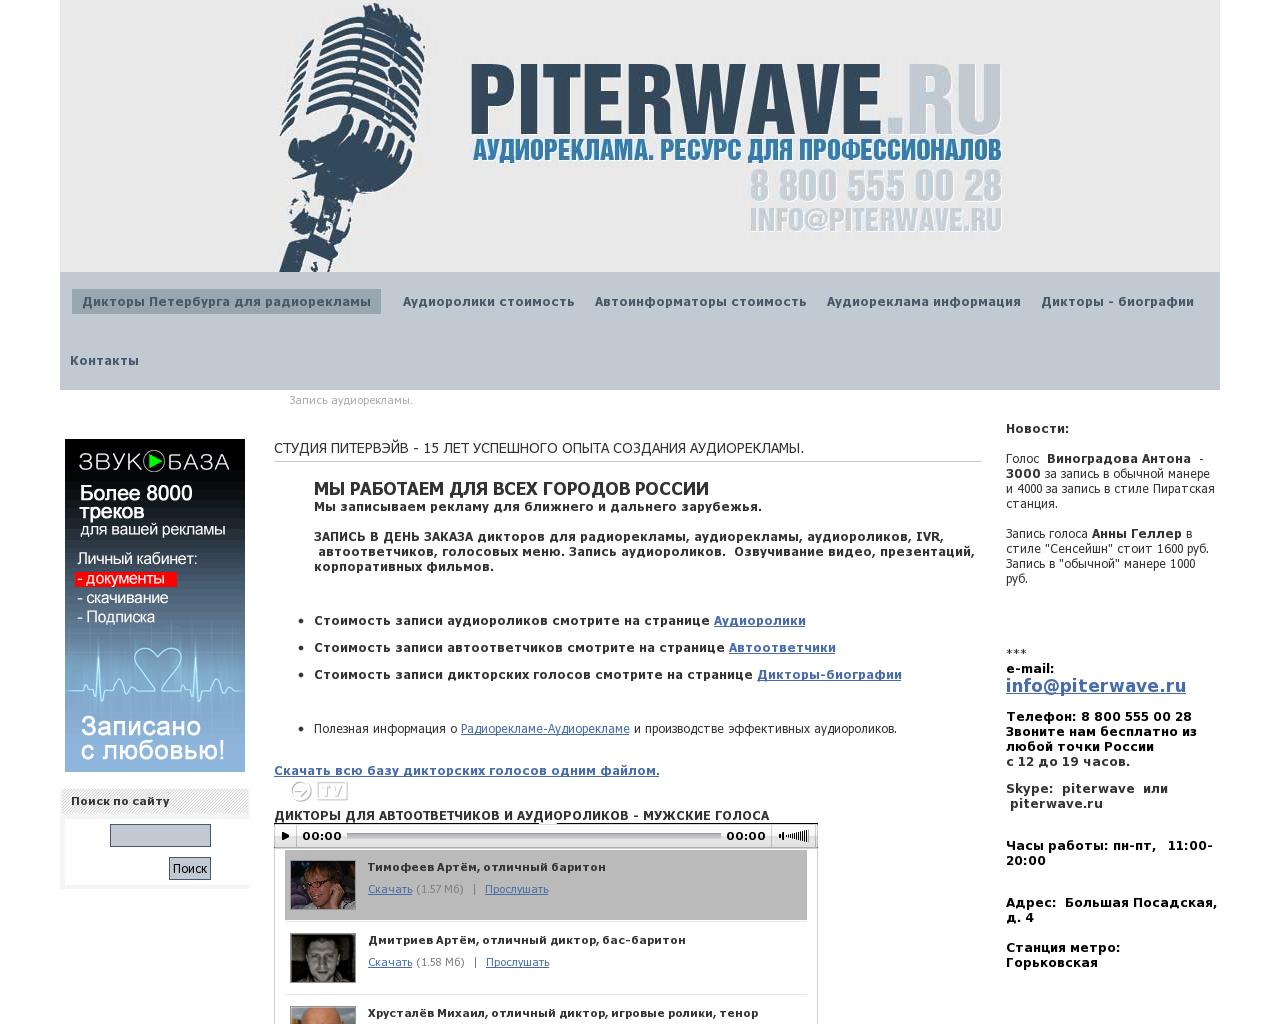 Изображение сайта piterwave.ru в разрешении 1280x1024